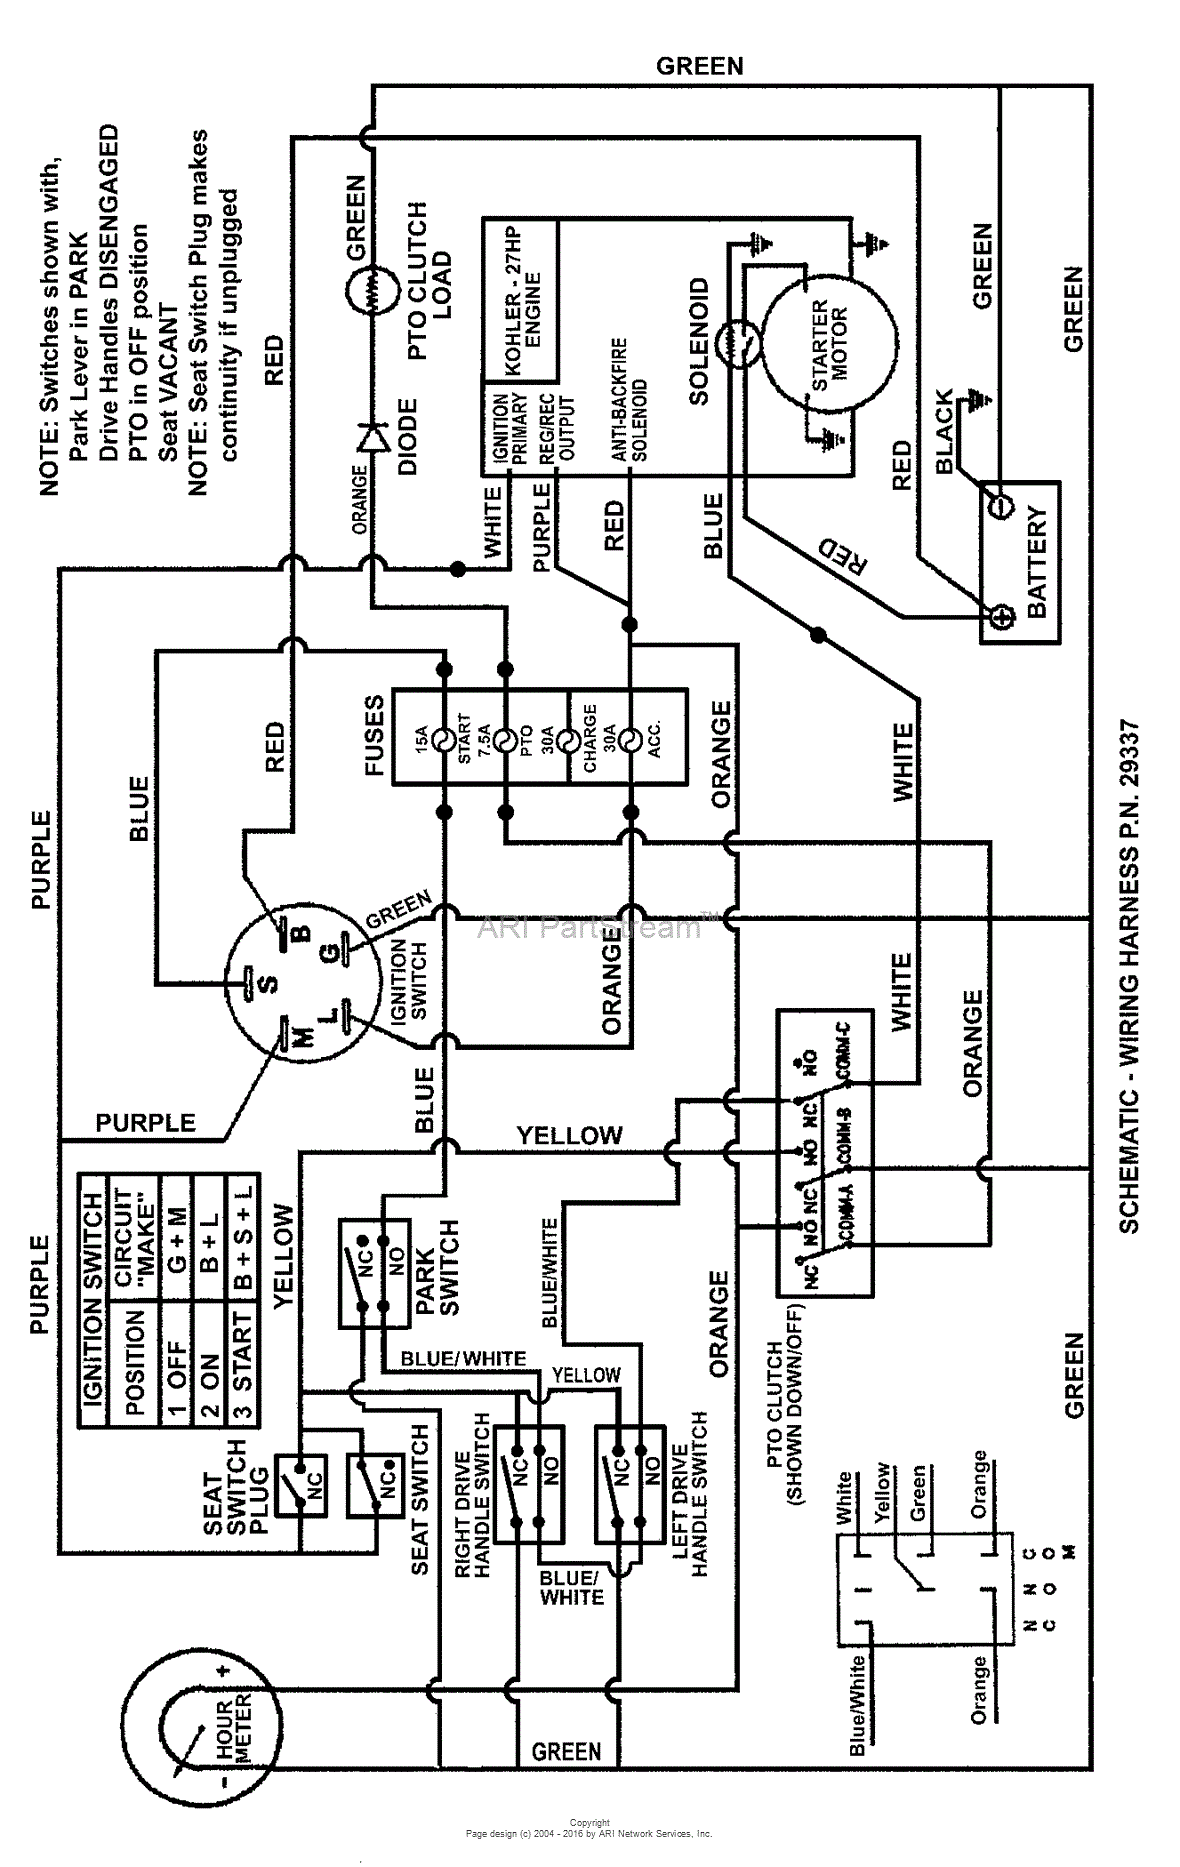 Broan 655 Wiring Diagram from schematron.org